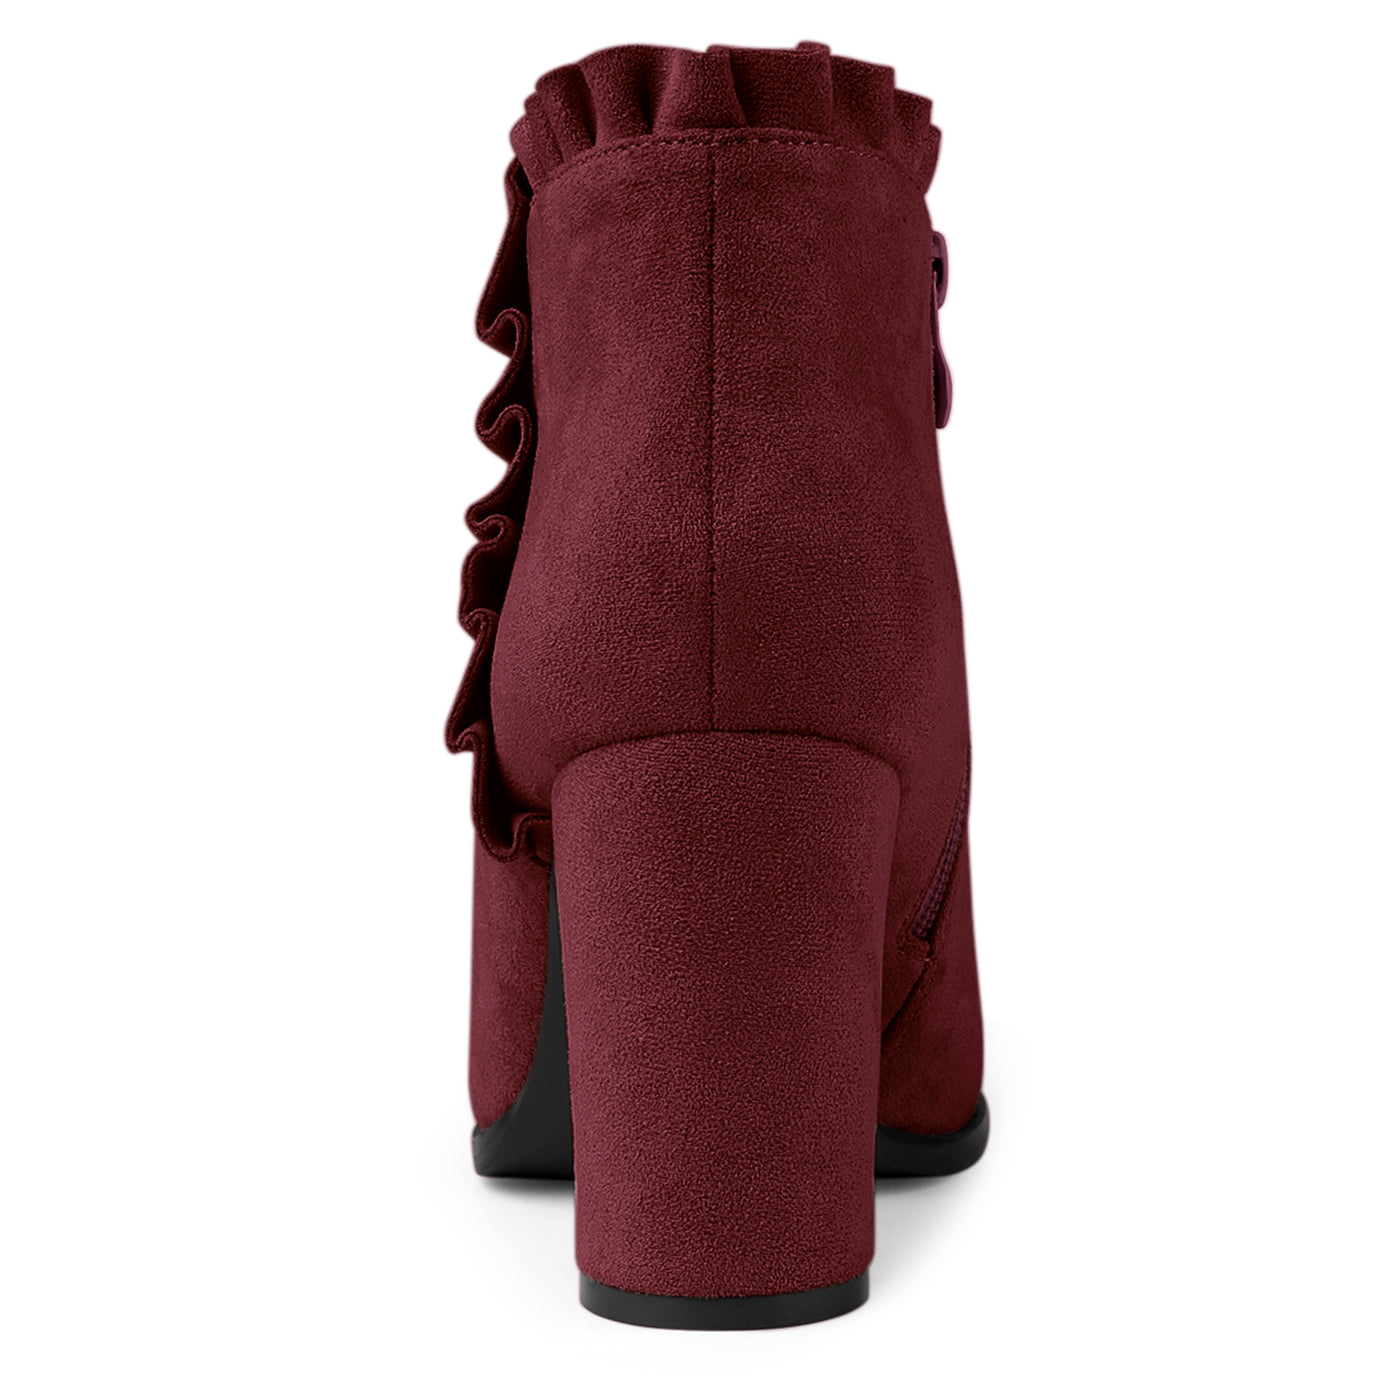 Allegra K Pointed Toe Ruffle Block Heel Side Zipper Ankle Boots